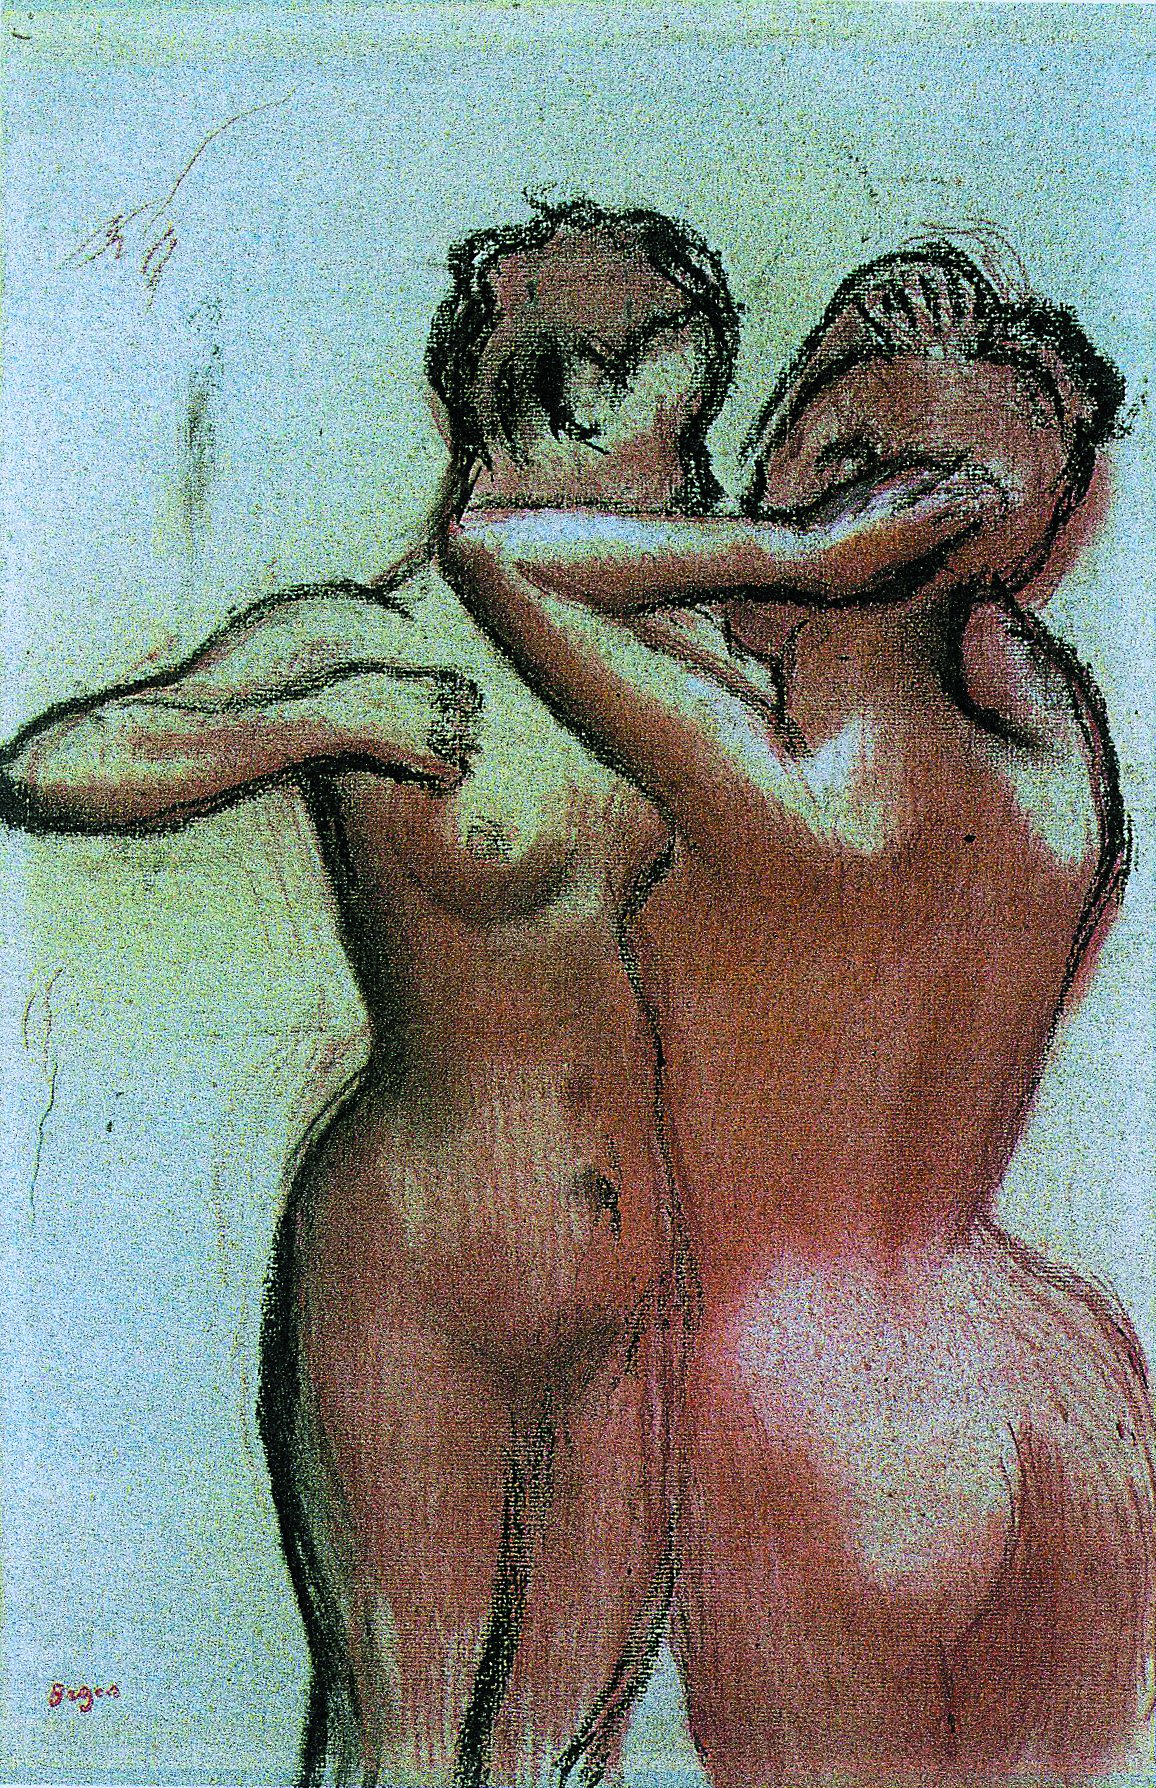 Deux femme nue